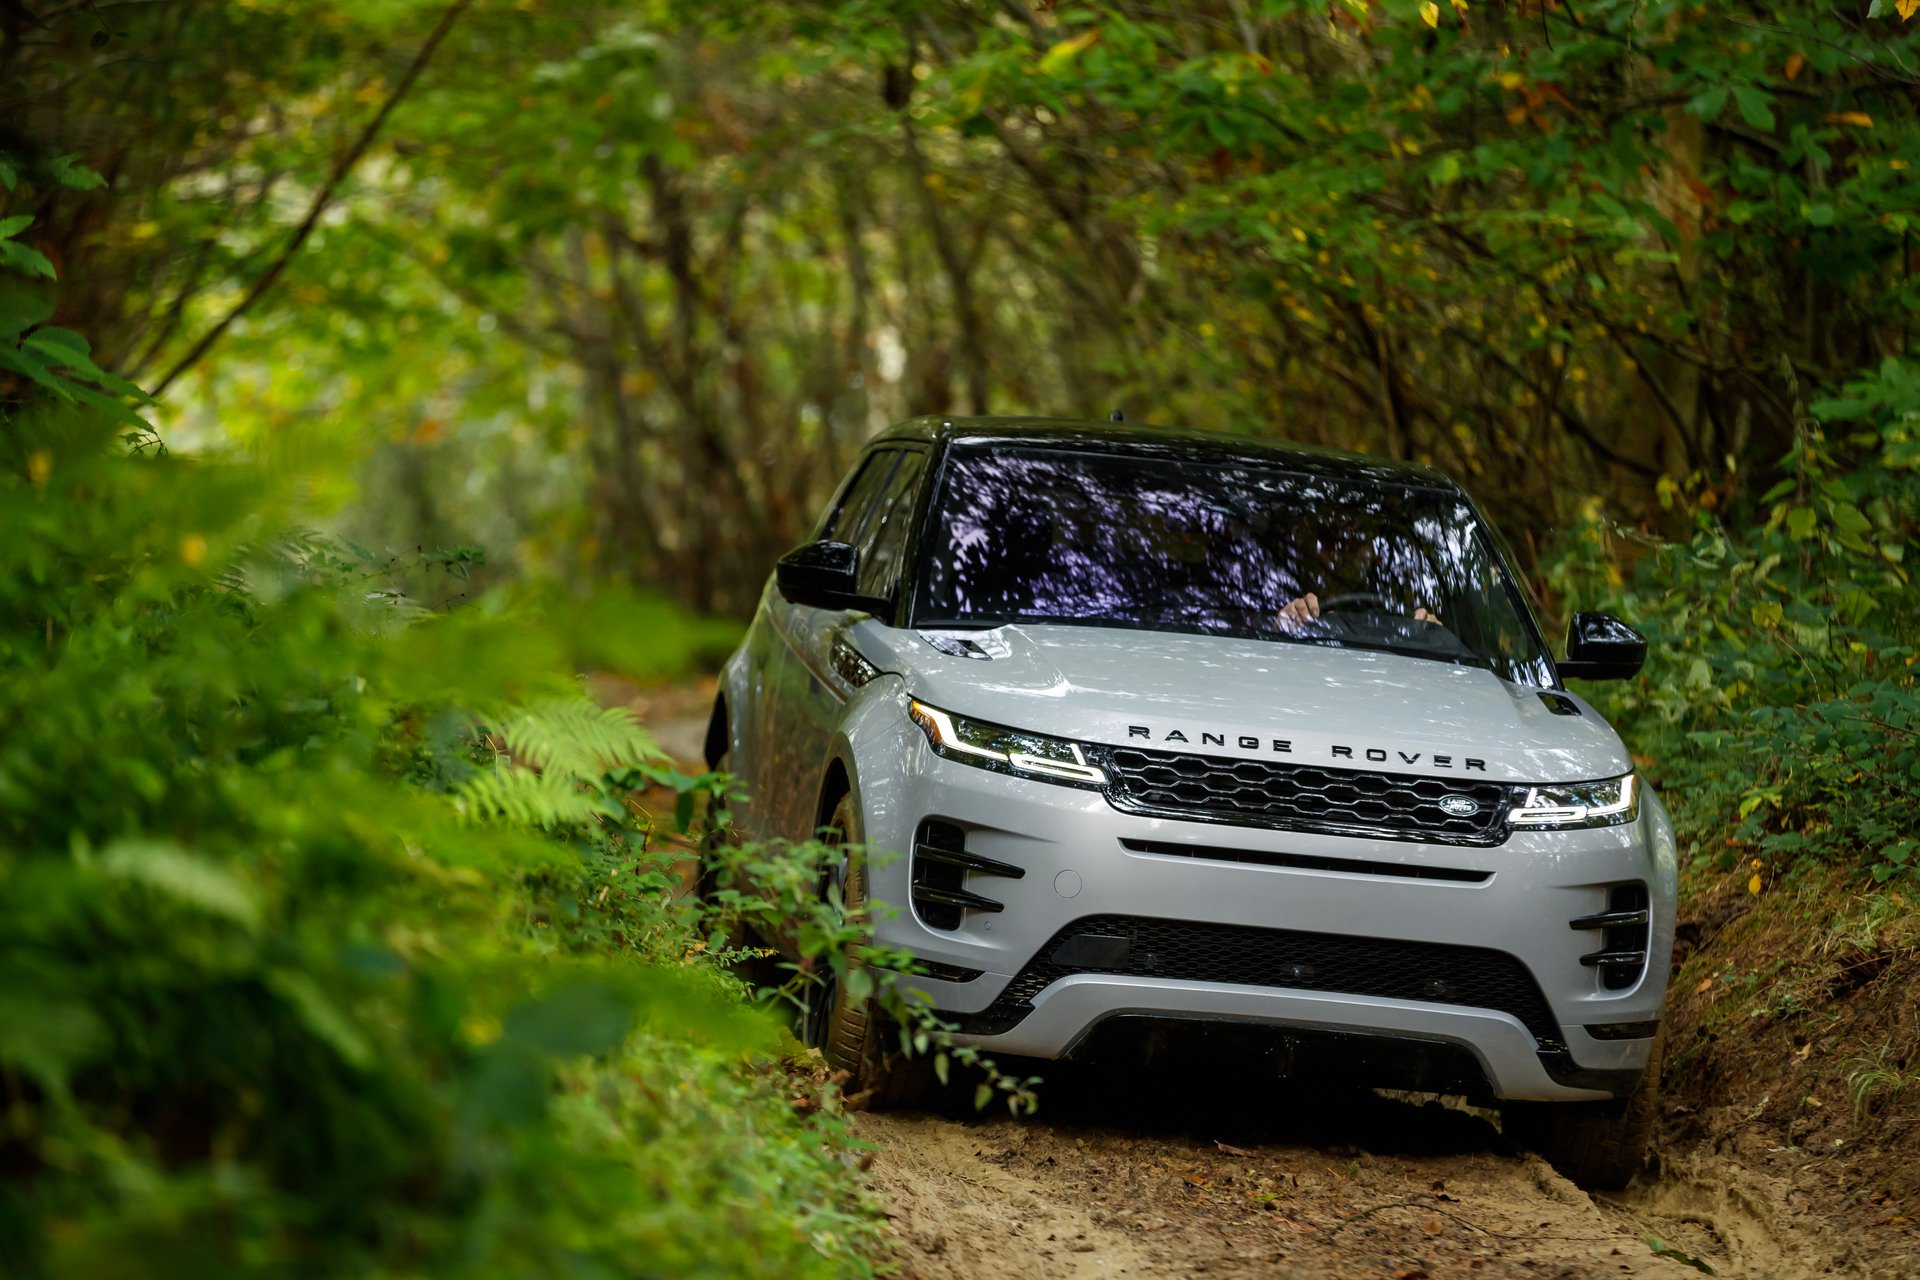 2019 Range Rover Evoque, Velar'a çok benzeyen tasarımıyla tanıtıldı